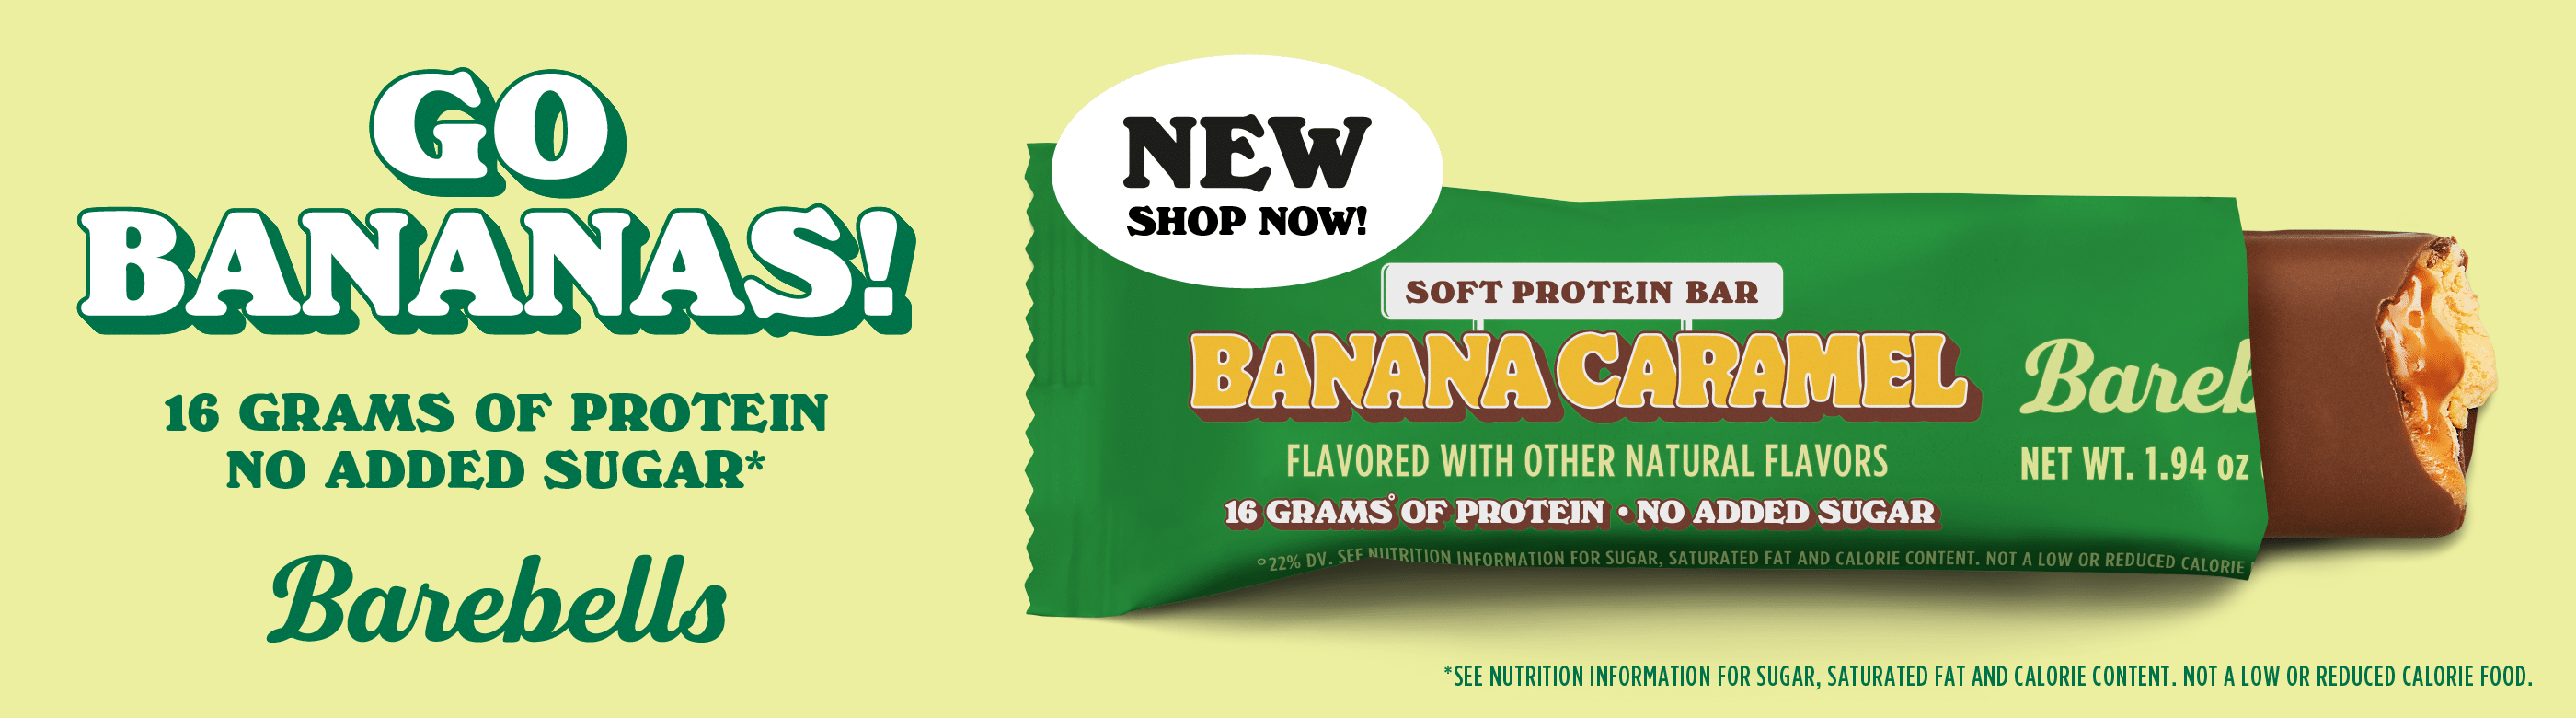 Barebells Banana Caramel Soft Bar new flavor